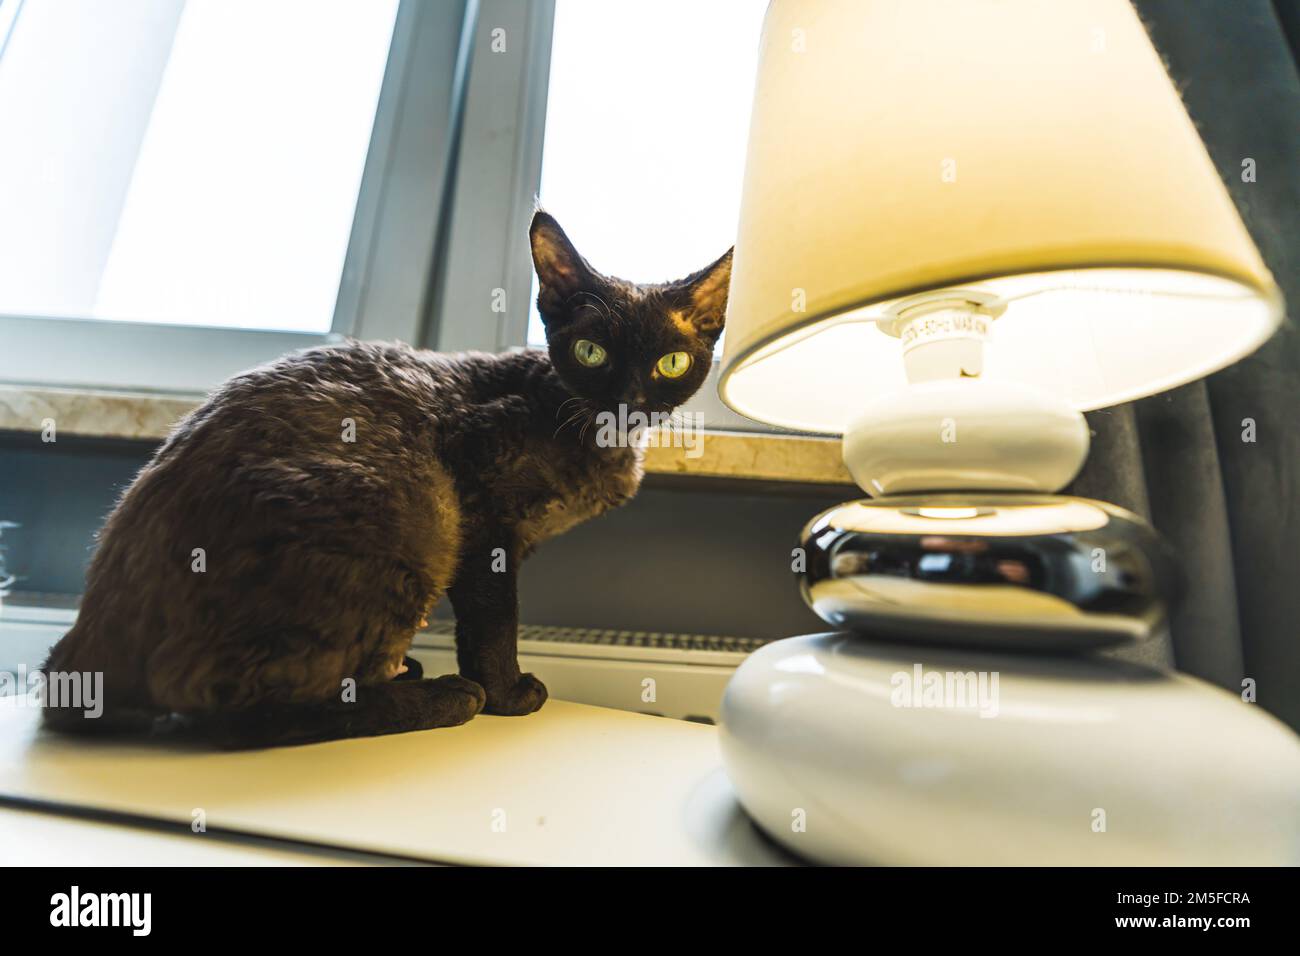 Scatto medio di un gatto scuro seduto accanto ad una lampada che è accesa. Concetto PET. Foto di alta qualità Foto Stock